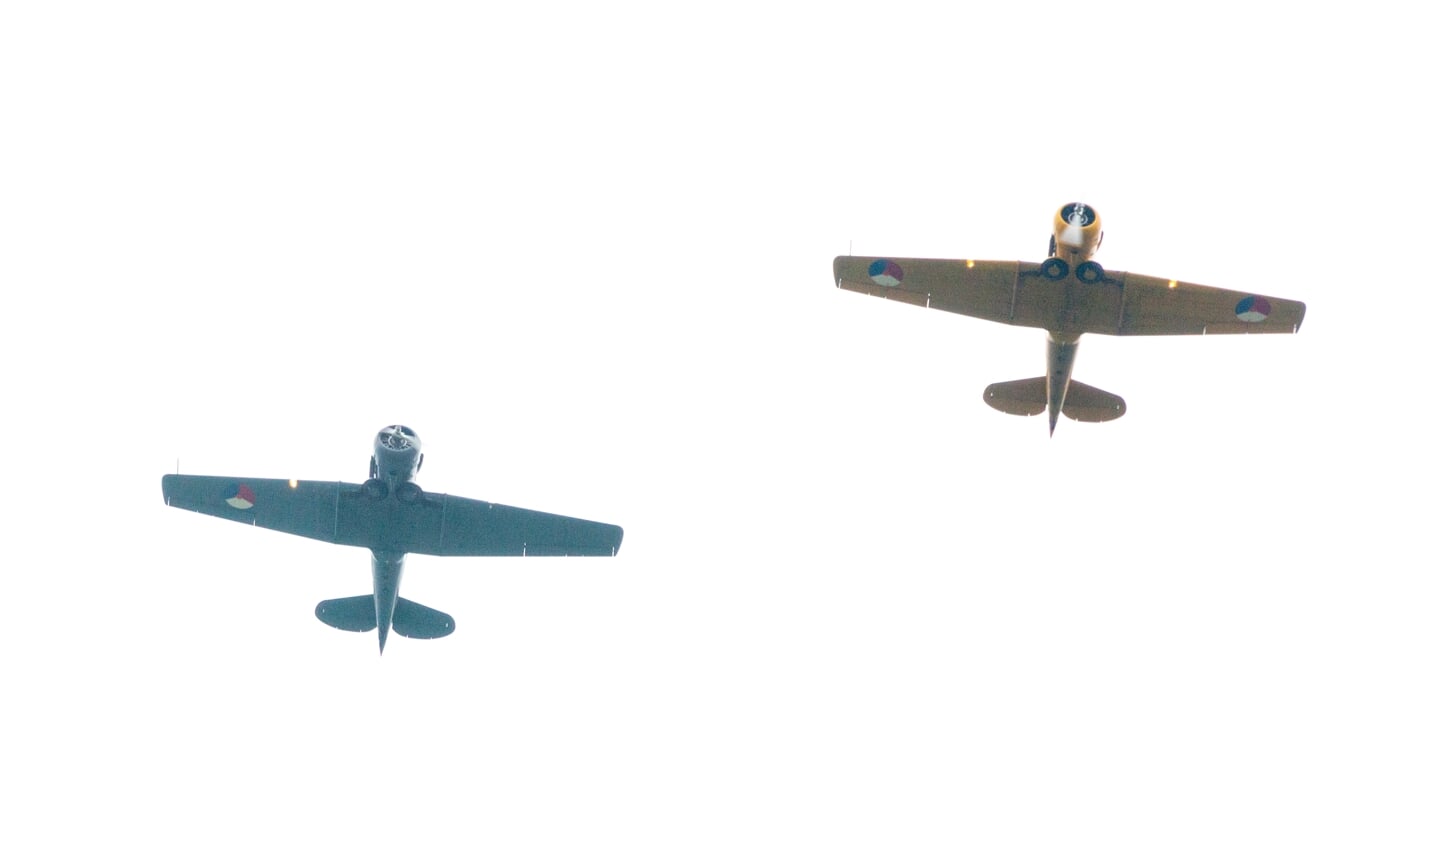 Militair saluut met twee Harvards van de Koninklijke Luchtmacht voor piloot Bill Abbott. Foto: Henk Derksen